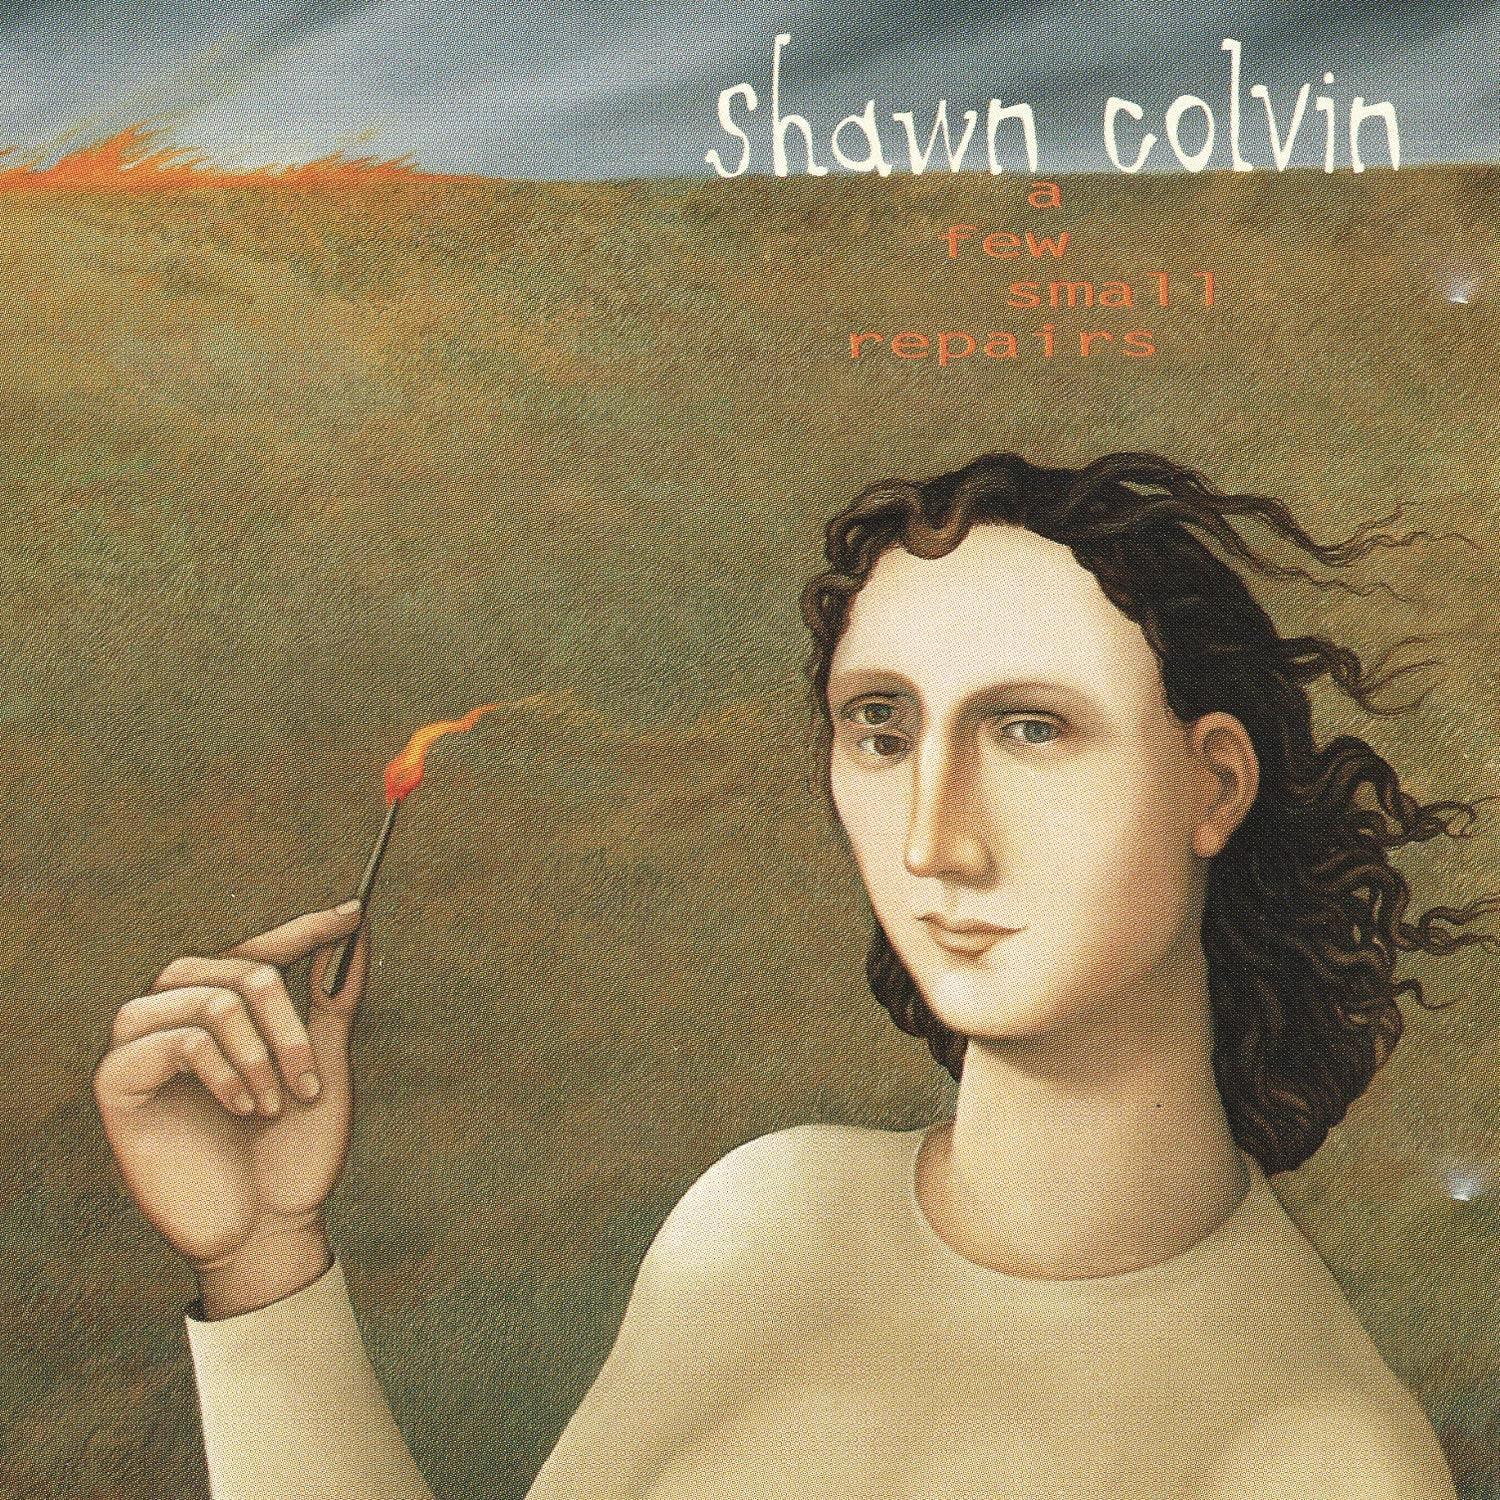 Shawn Colvin- A Few Small Repairs - DarksideRecords